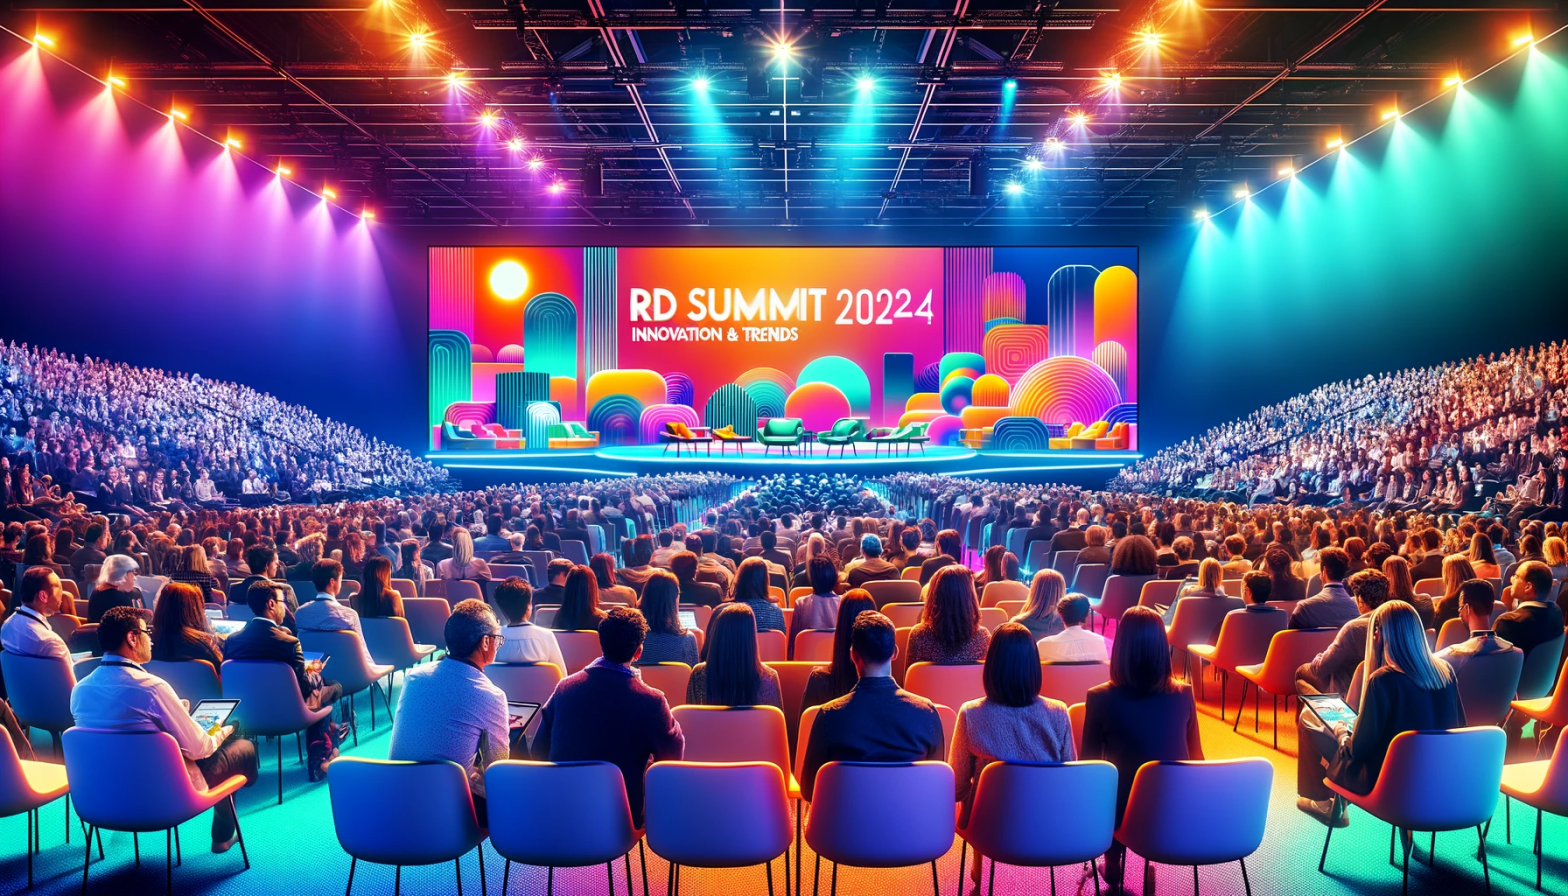 RD Summit 2023: confira os destaques dessa edição histórica